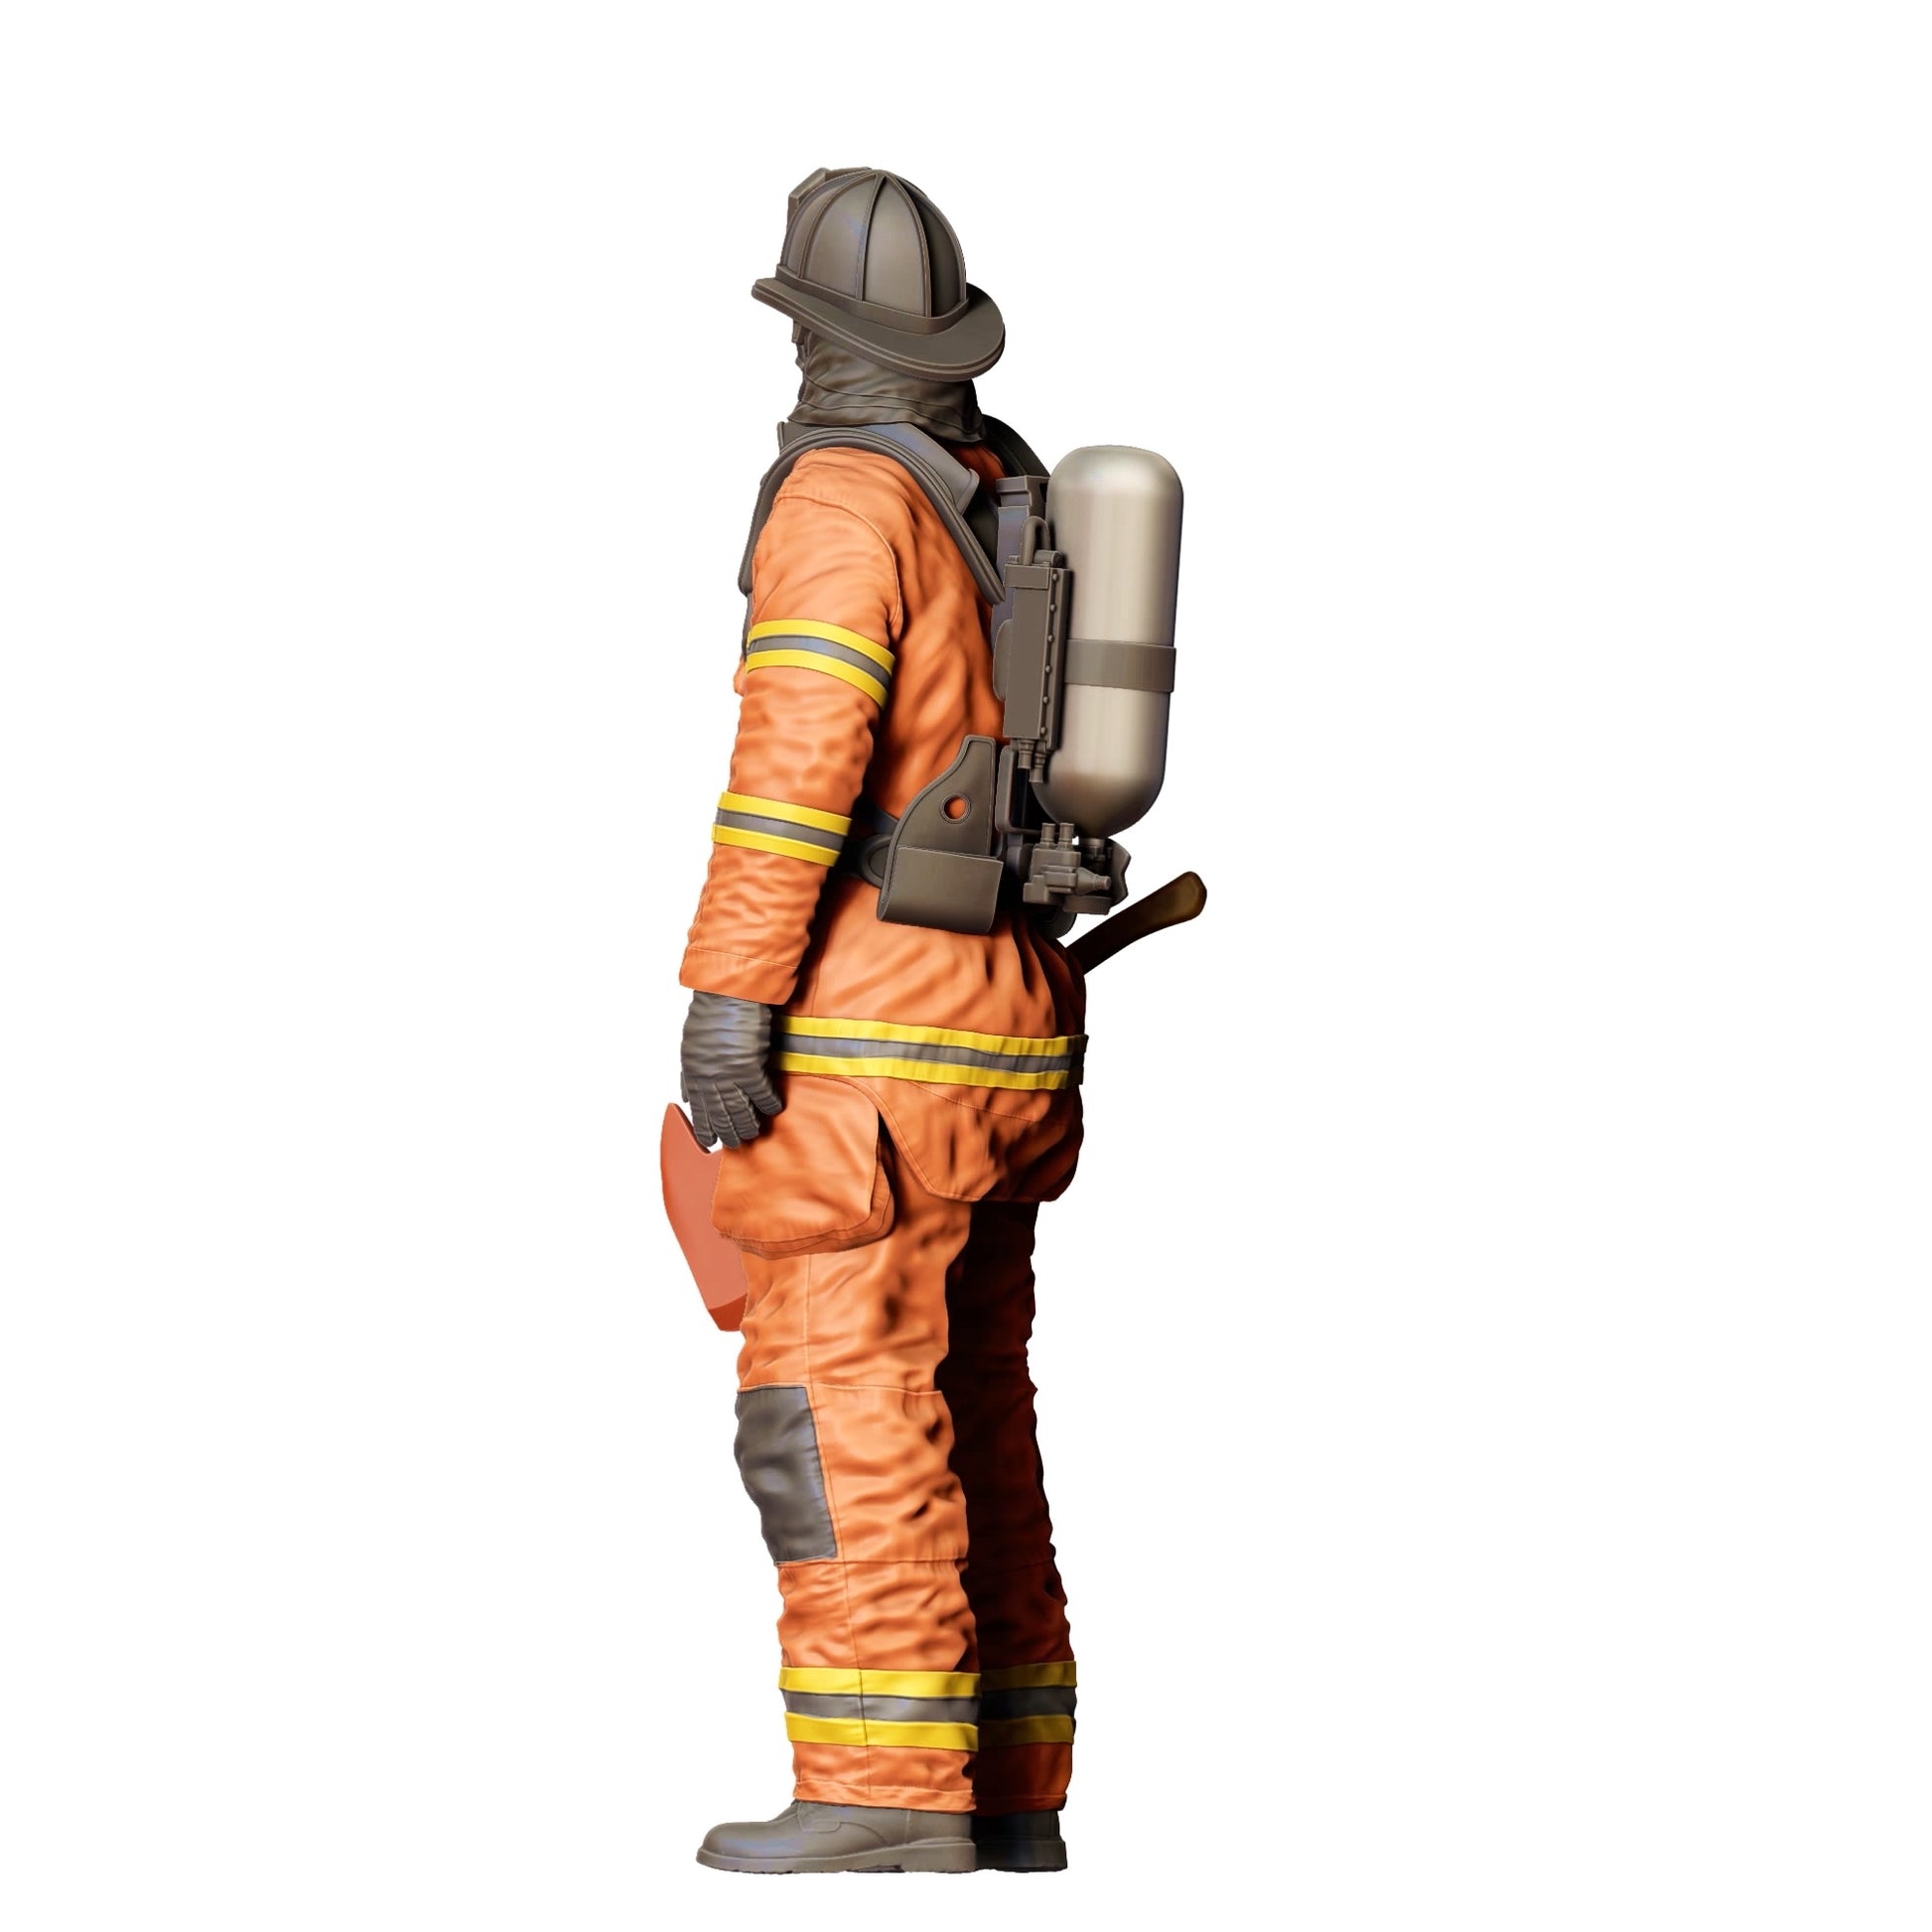 Diorama Modellbau Produktfoto 0: Feuerwehrmann Amerikanisch - Mit Axt  (Ref. Nr. 308)